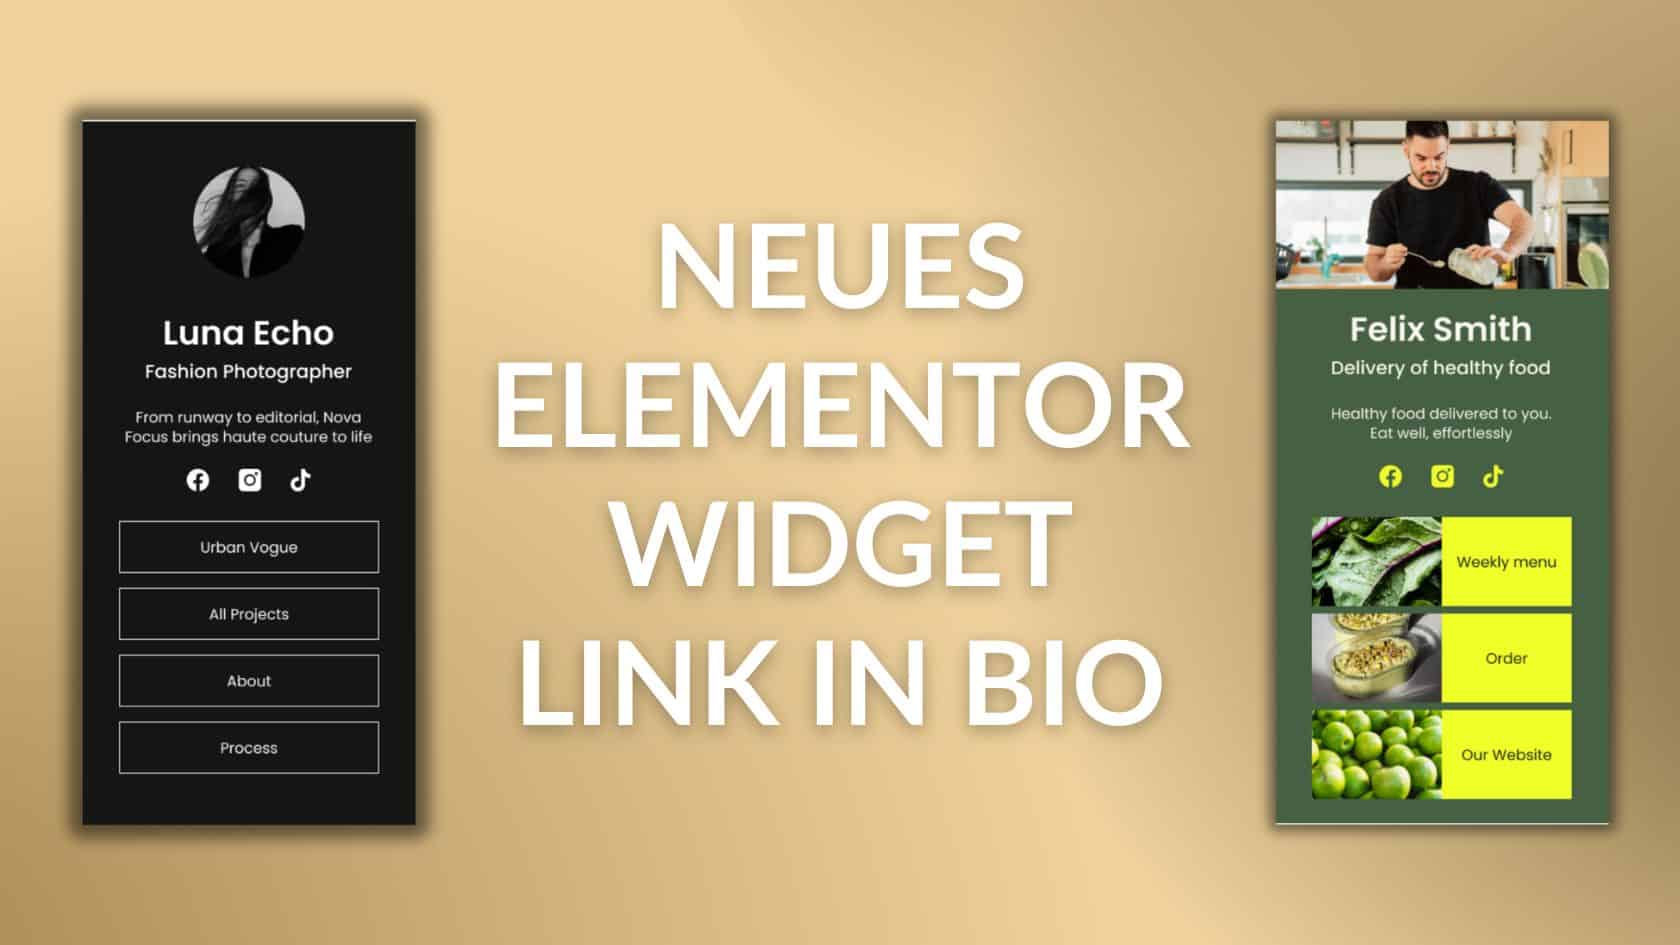 Neues Elementor Widget Link in Bio Blogartikel by Thomas Gress